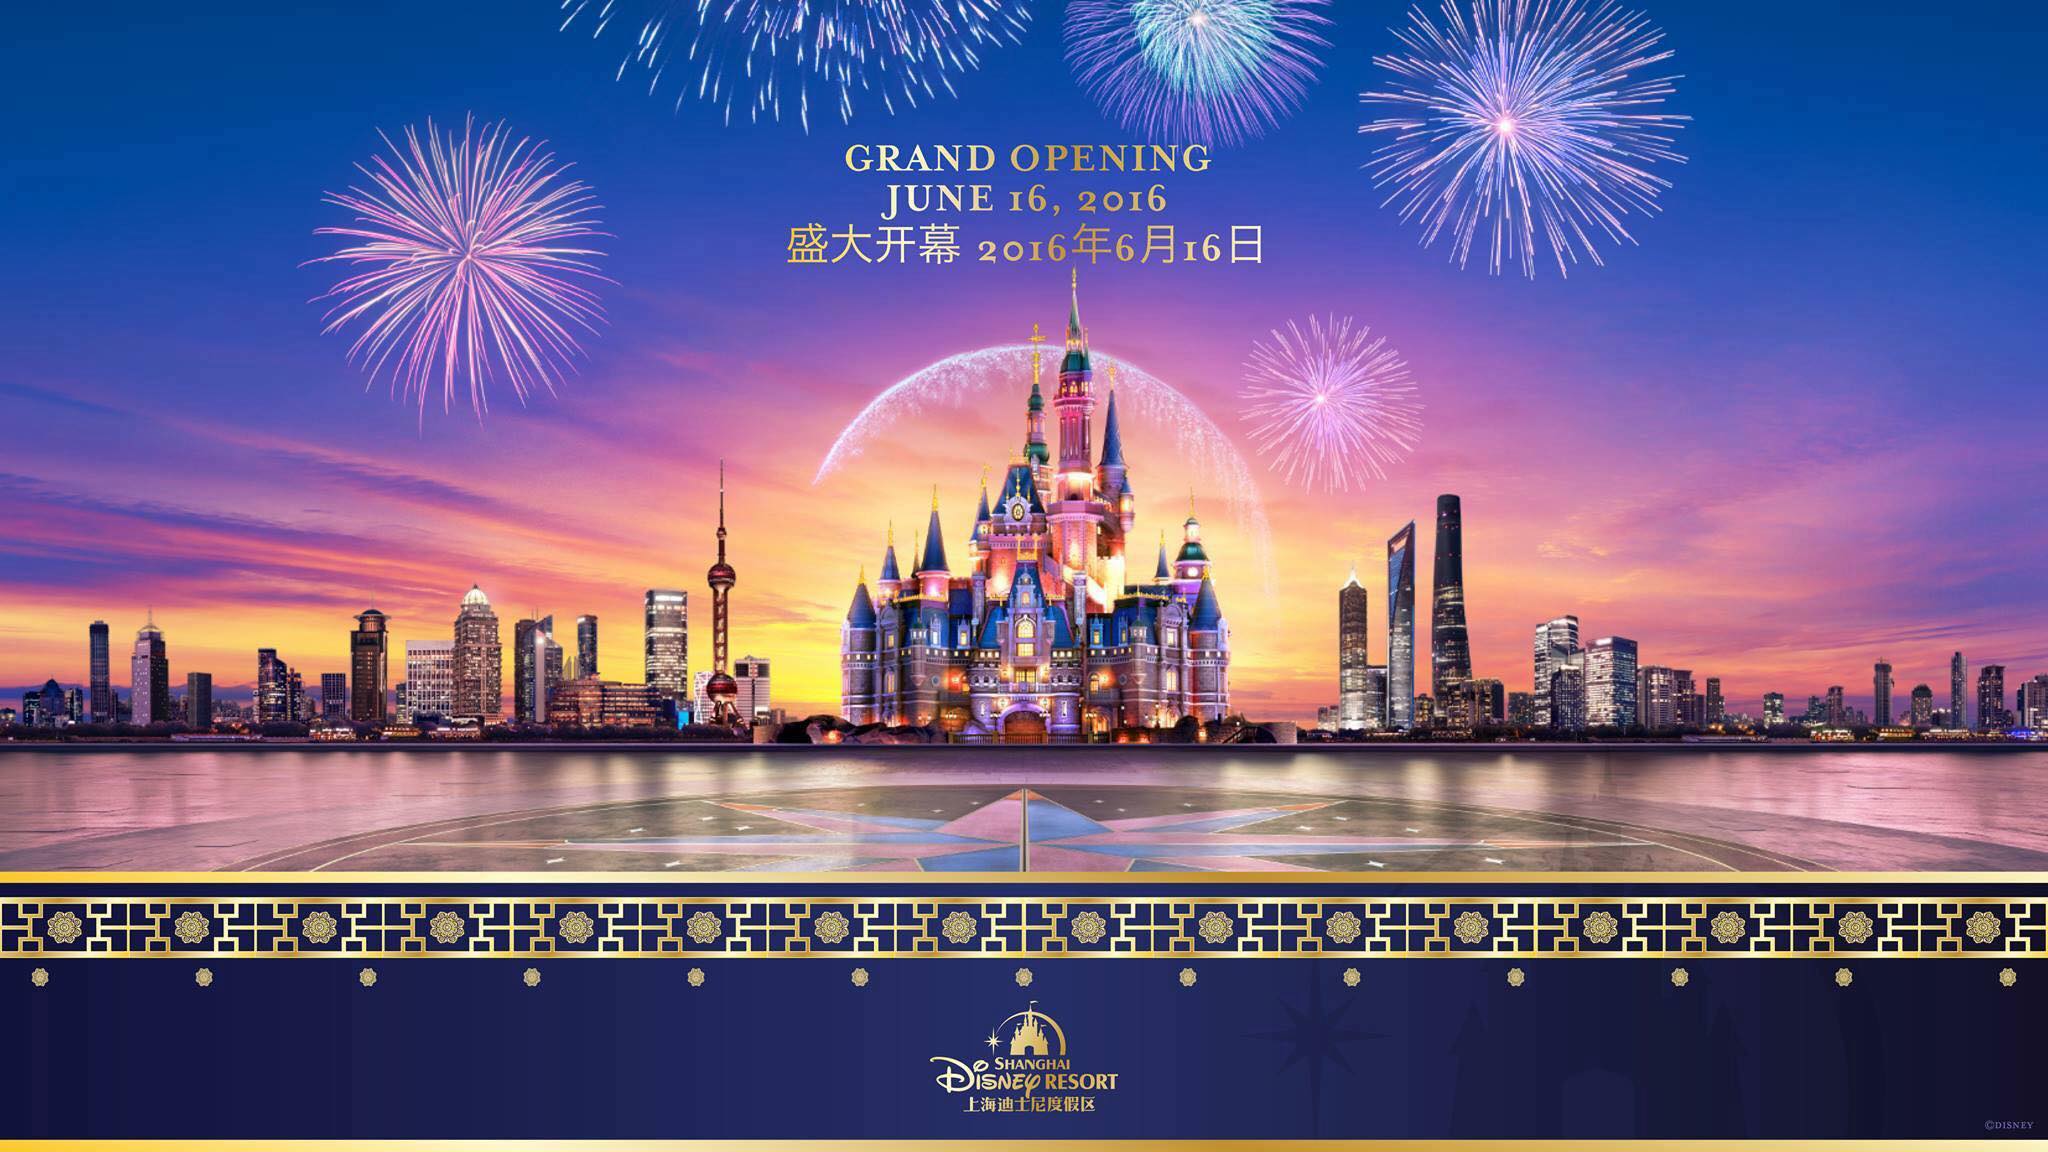 Shanghai Disneyland Grand Opening